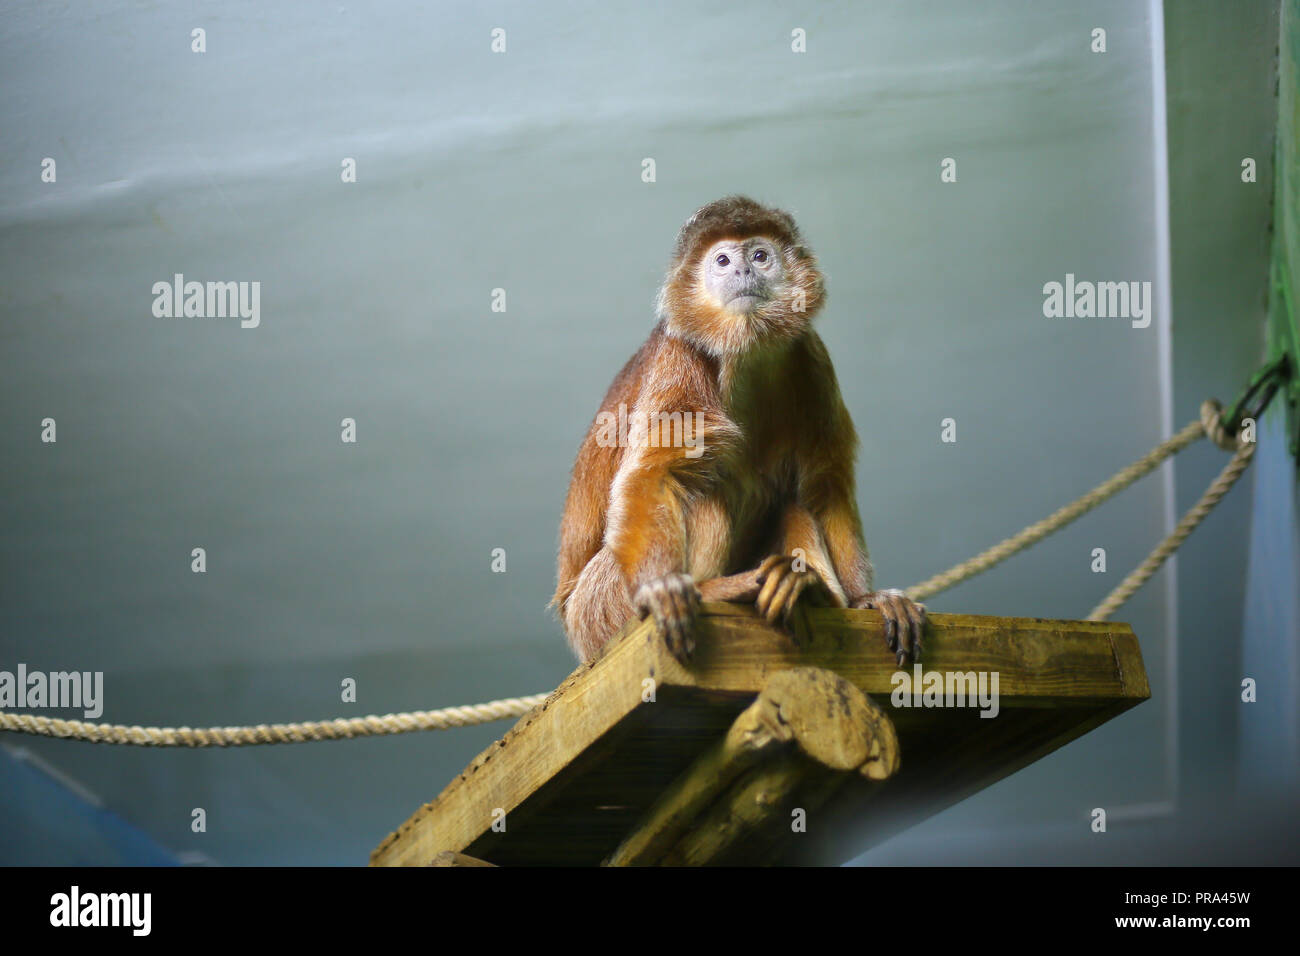 Javanischer Langur, Monkey, Orange, shaggy Primat auf einem Holzregal in einem Zoo Zuhause sitzt, sieht in der Aufregung, in Gefahr, Warnung Stockfoto